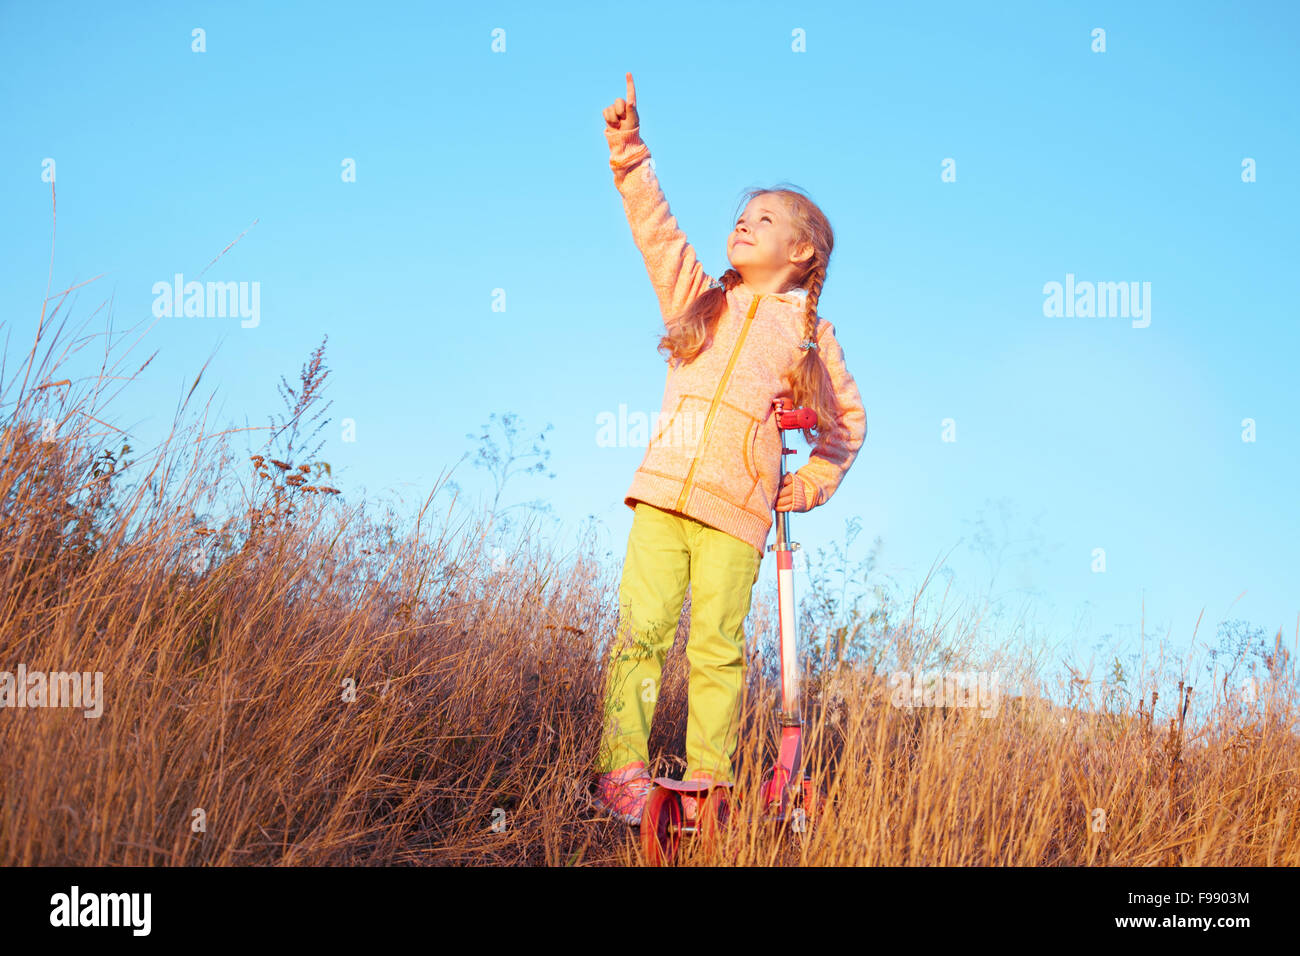 Kleine Mädchen in helle Kleidung mit Scooter zeigt einen Finger in den Himmel Stockfoto